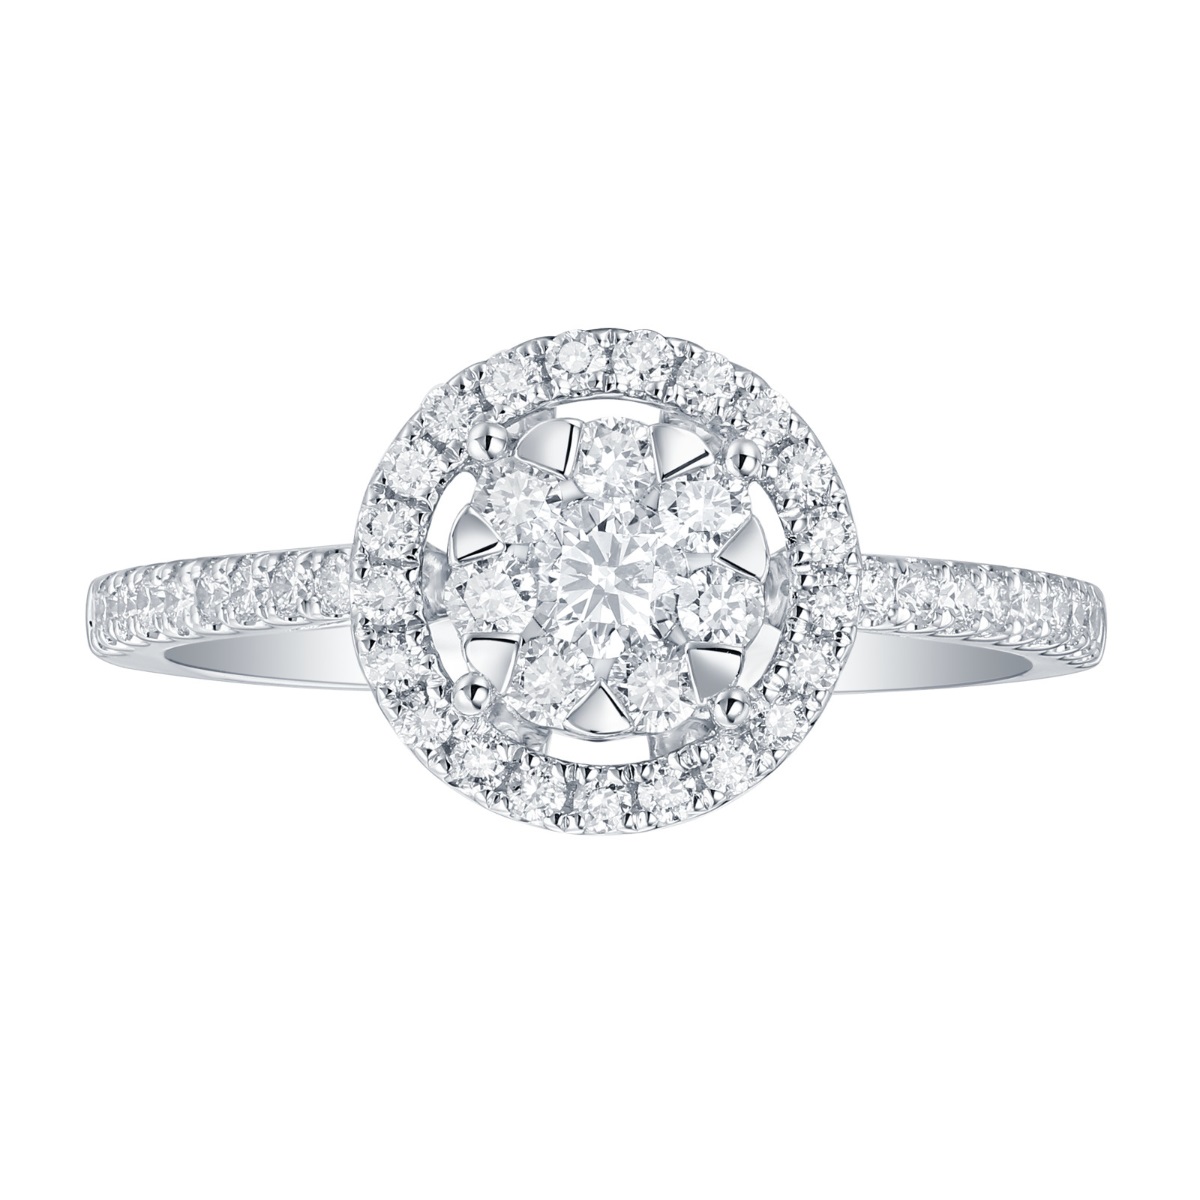 R36371WHT – 18K White Gold Diamond Ring, 0.56 TCW